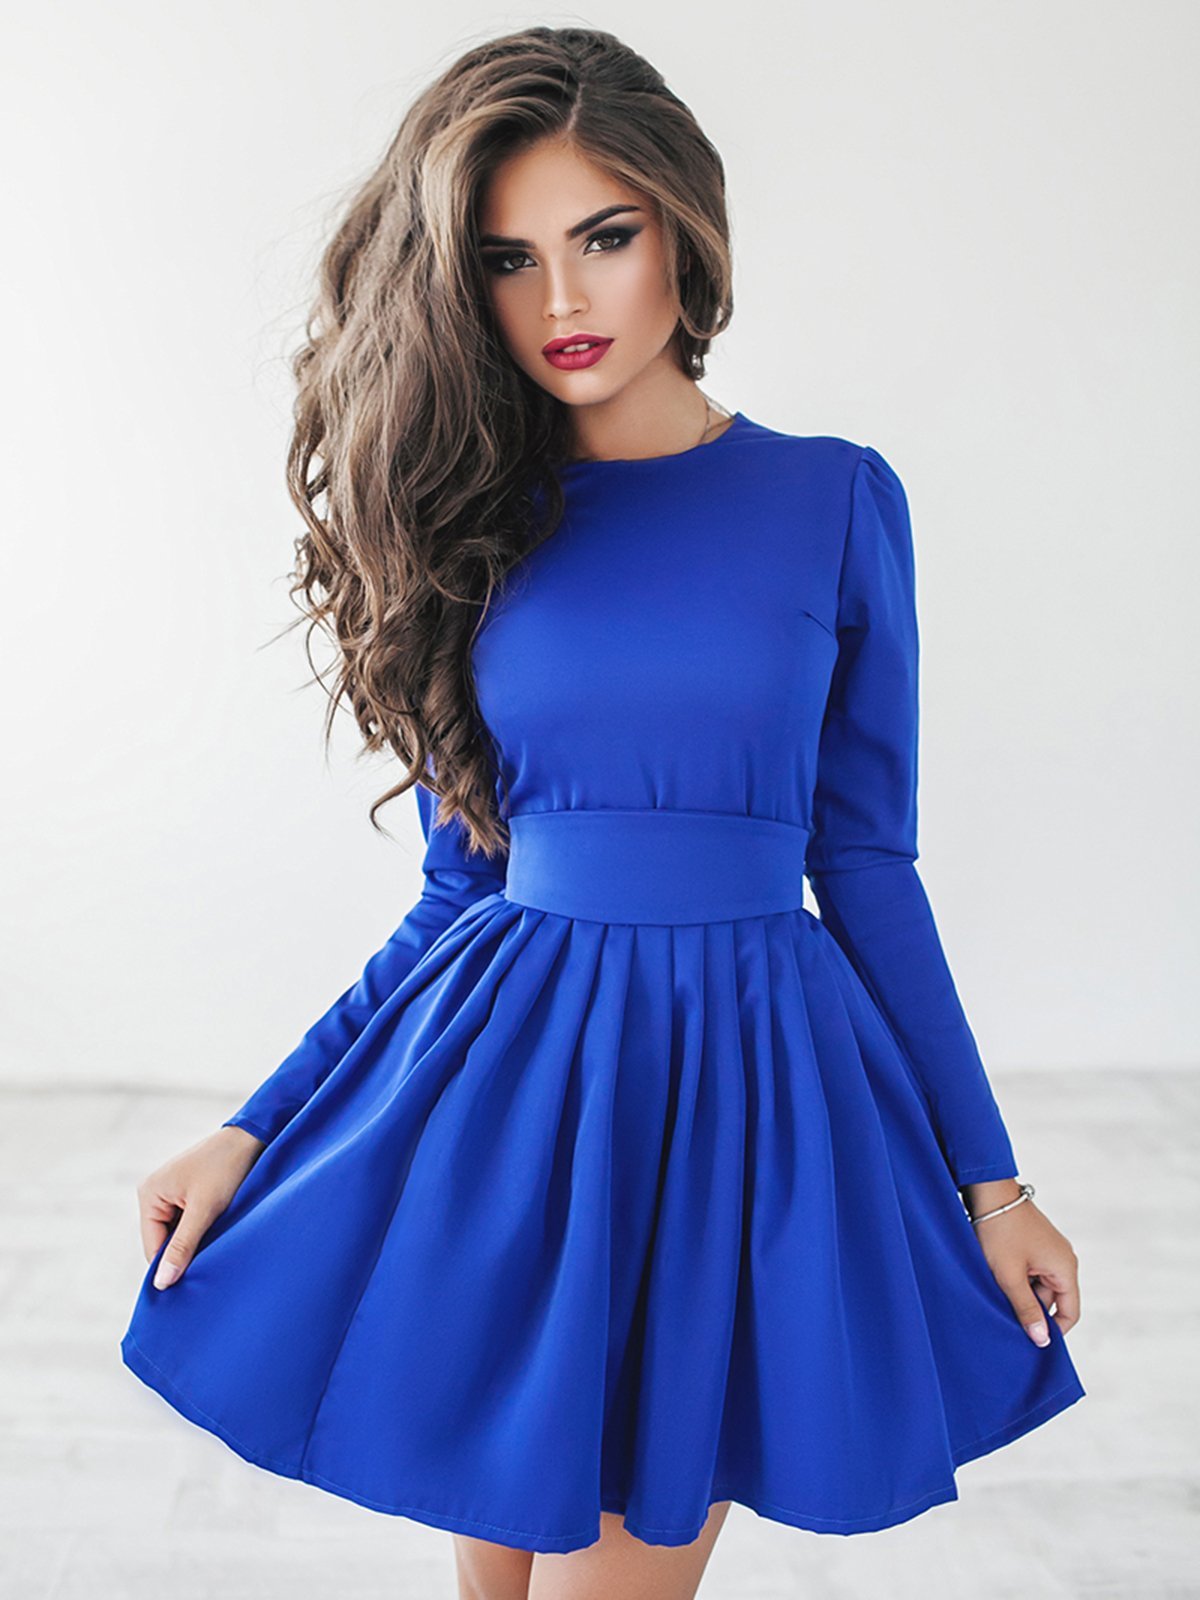 Красивые платья цена. Платье. Красивые платья. Красивое синее платье. Девушка в платье красивая.